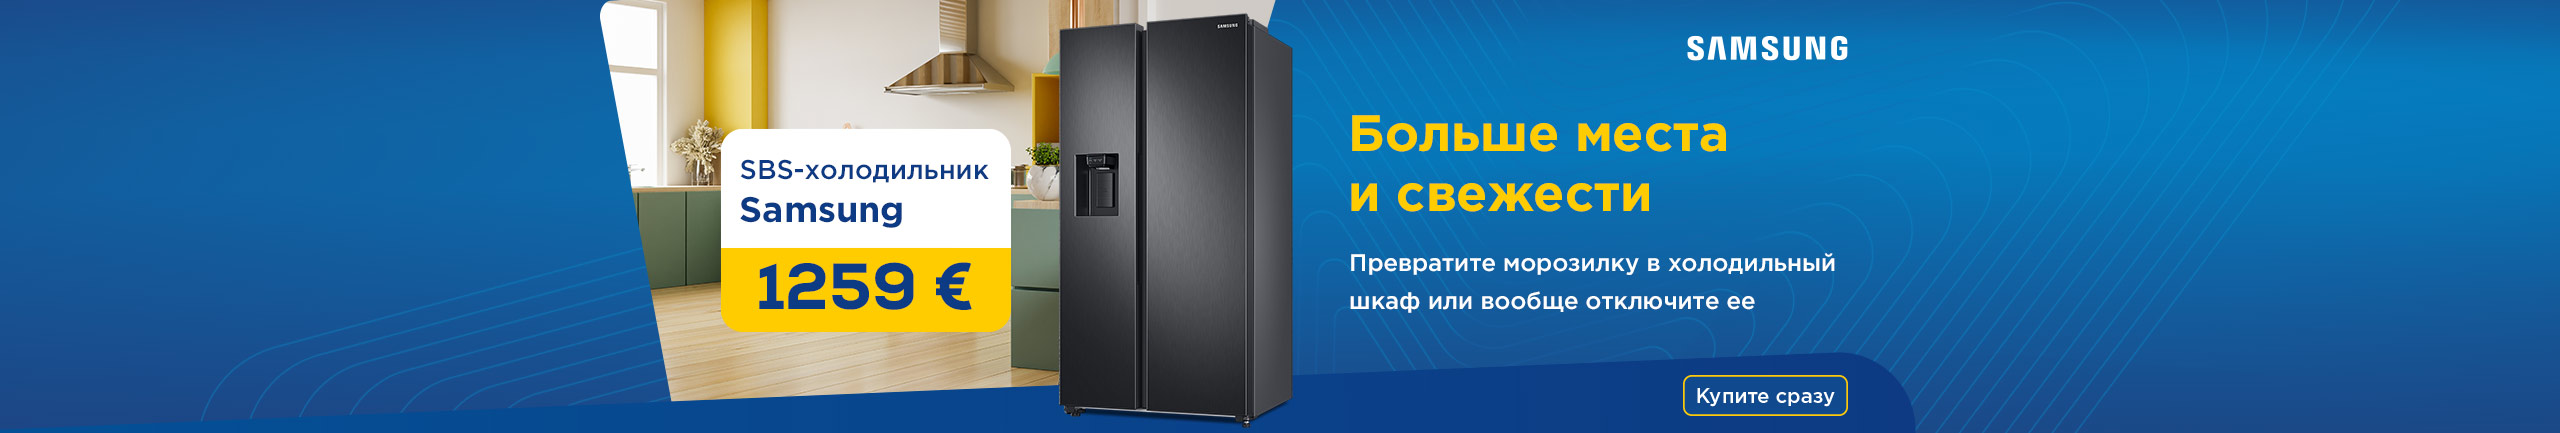 SBS-холодильник Samsung